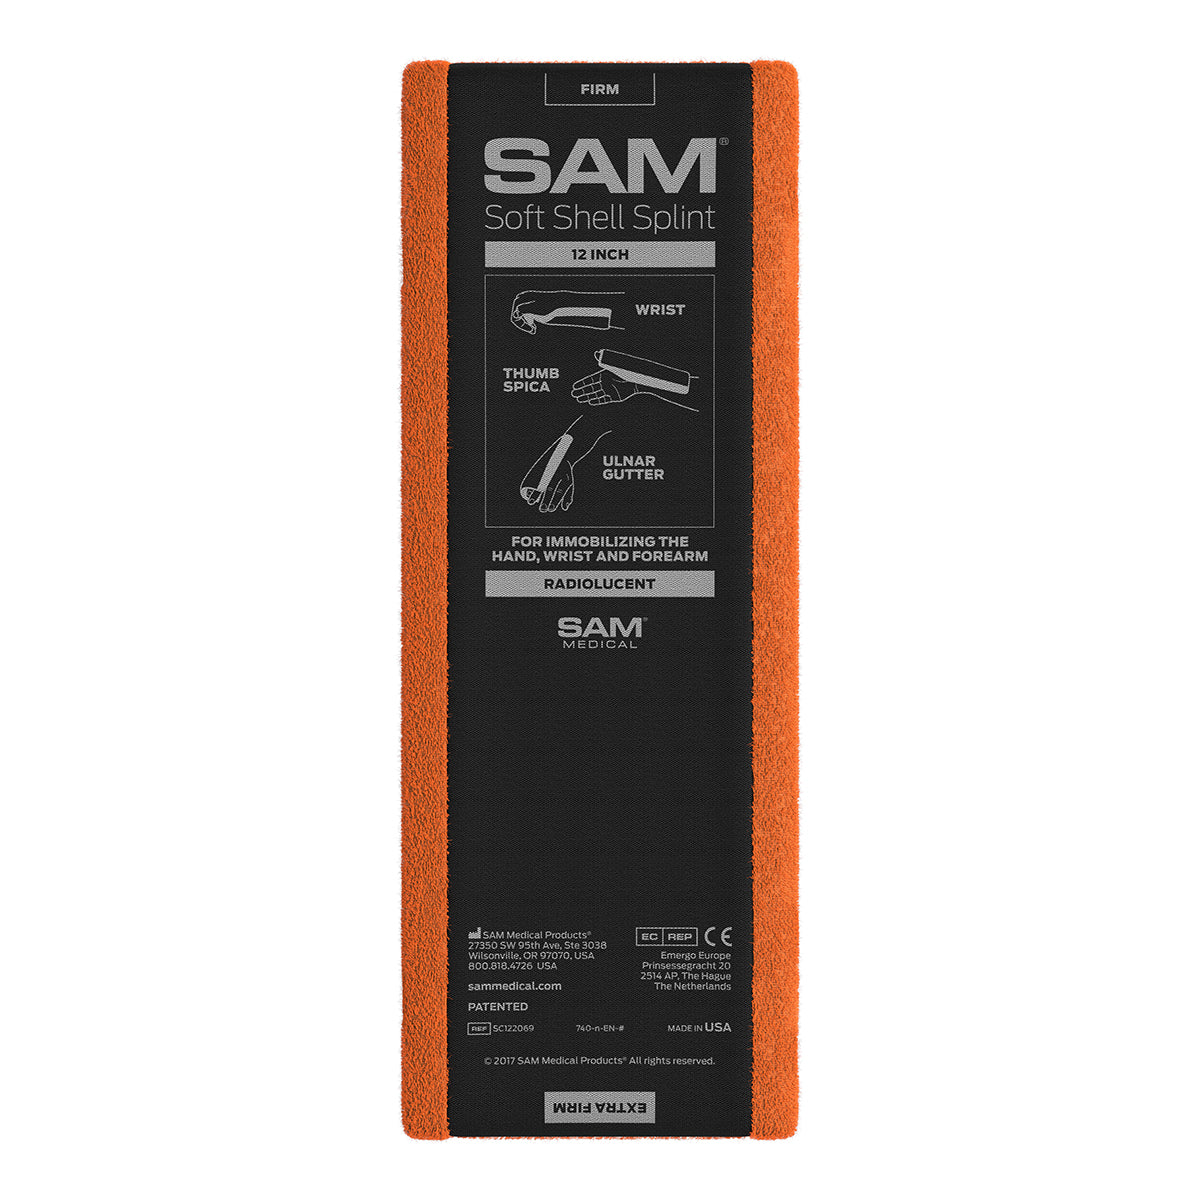 SAM Soft Shell Splint 12 Inches